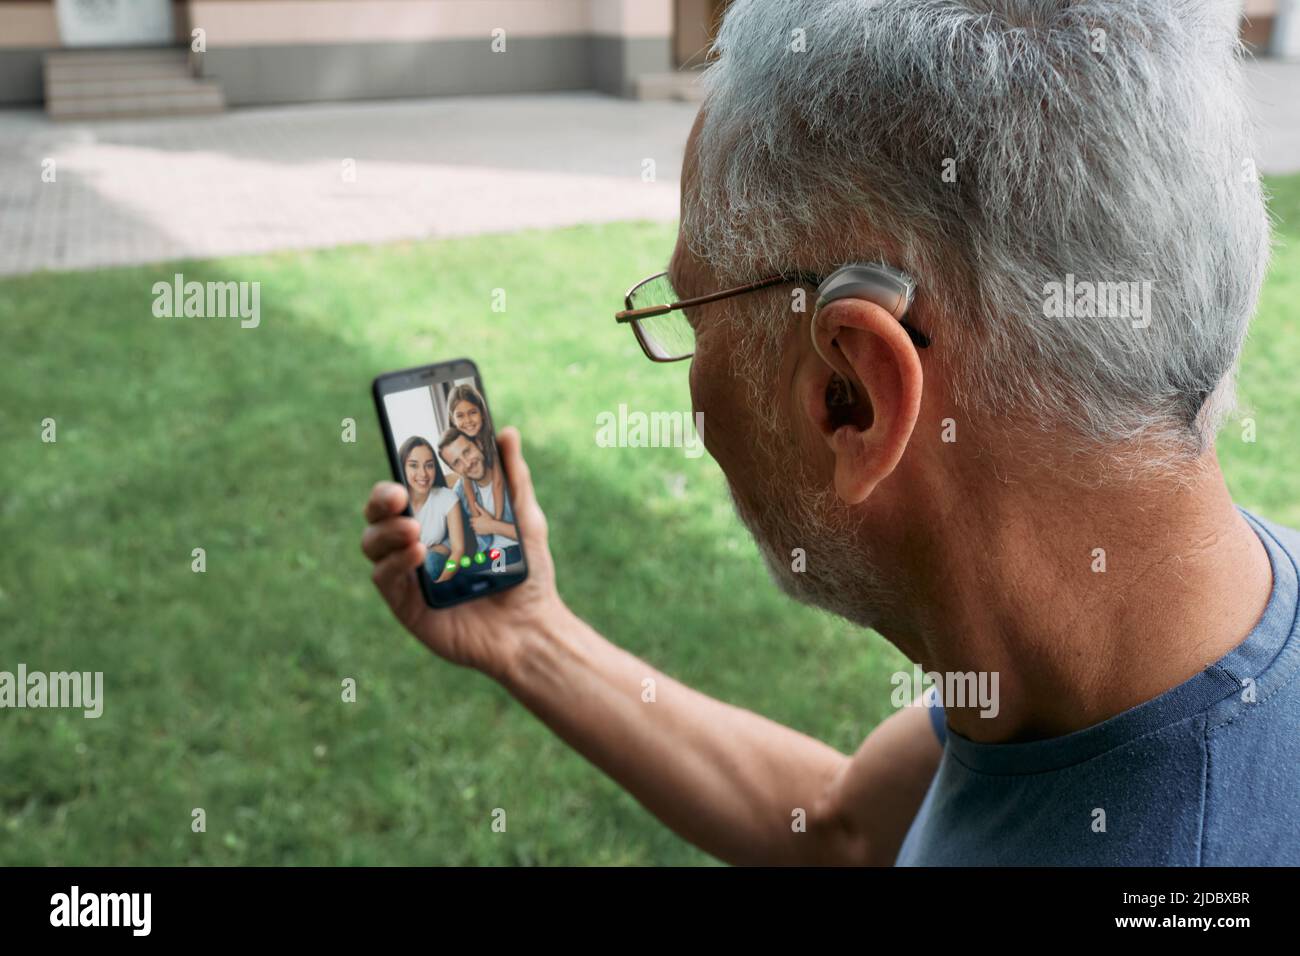 Un hombre mayor con un audífono detrás del oído se comunica con su familia a través de una comunicación de vídeo a través de un smartphone. Vida humana completa con audífonos Foto de stock